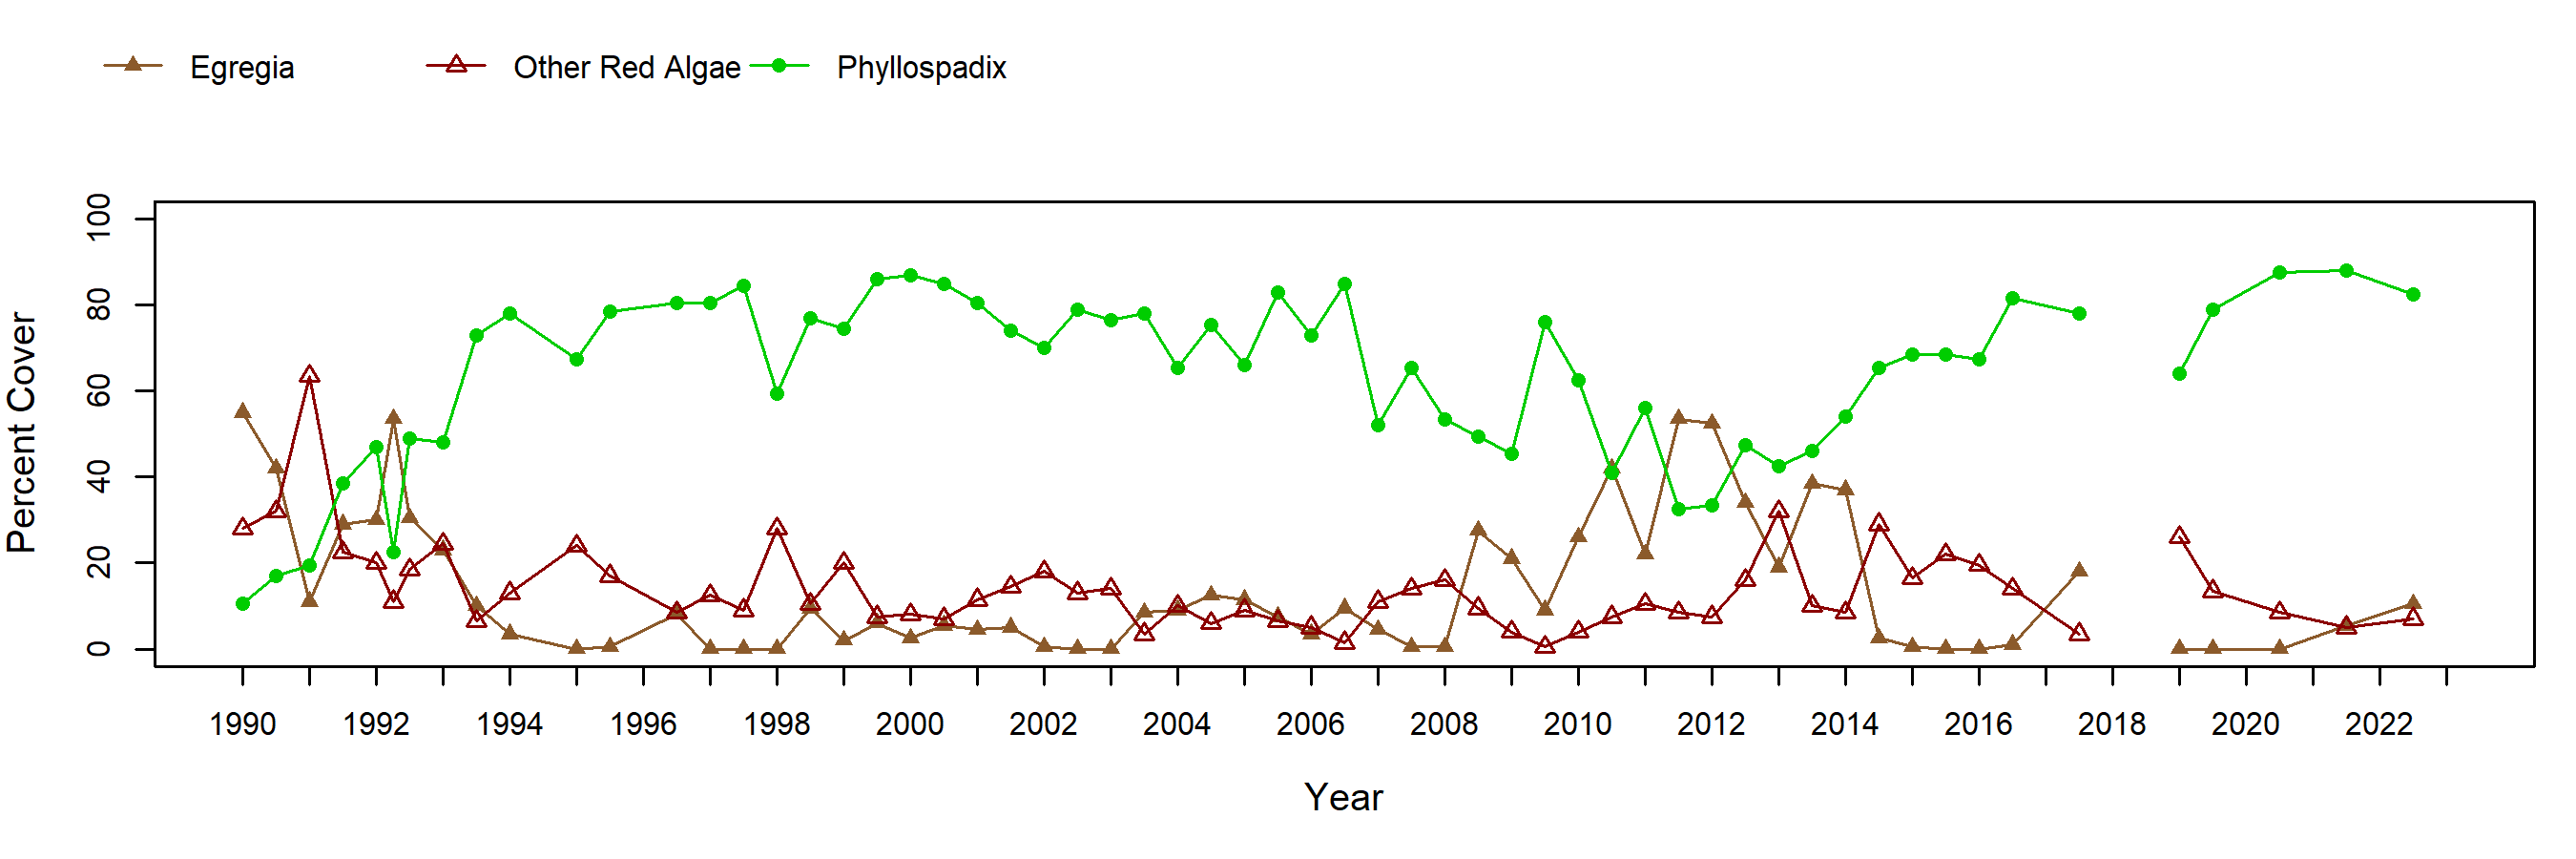 Cabrillo II Egregia trend plot